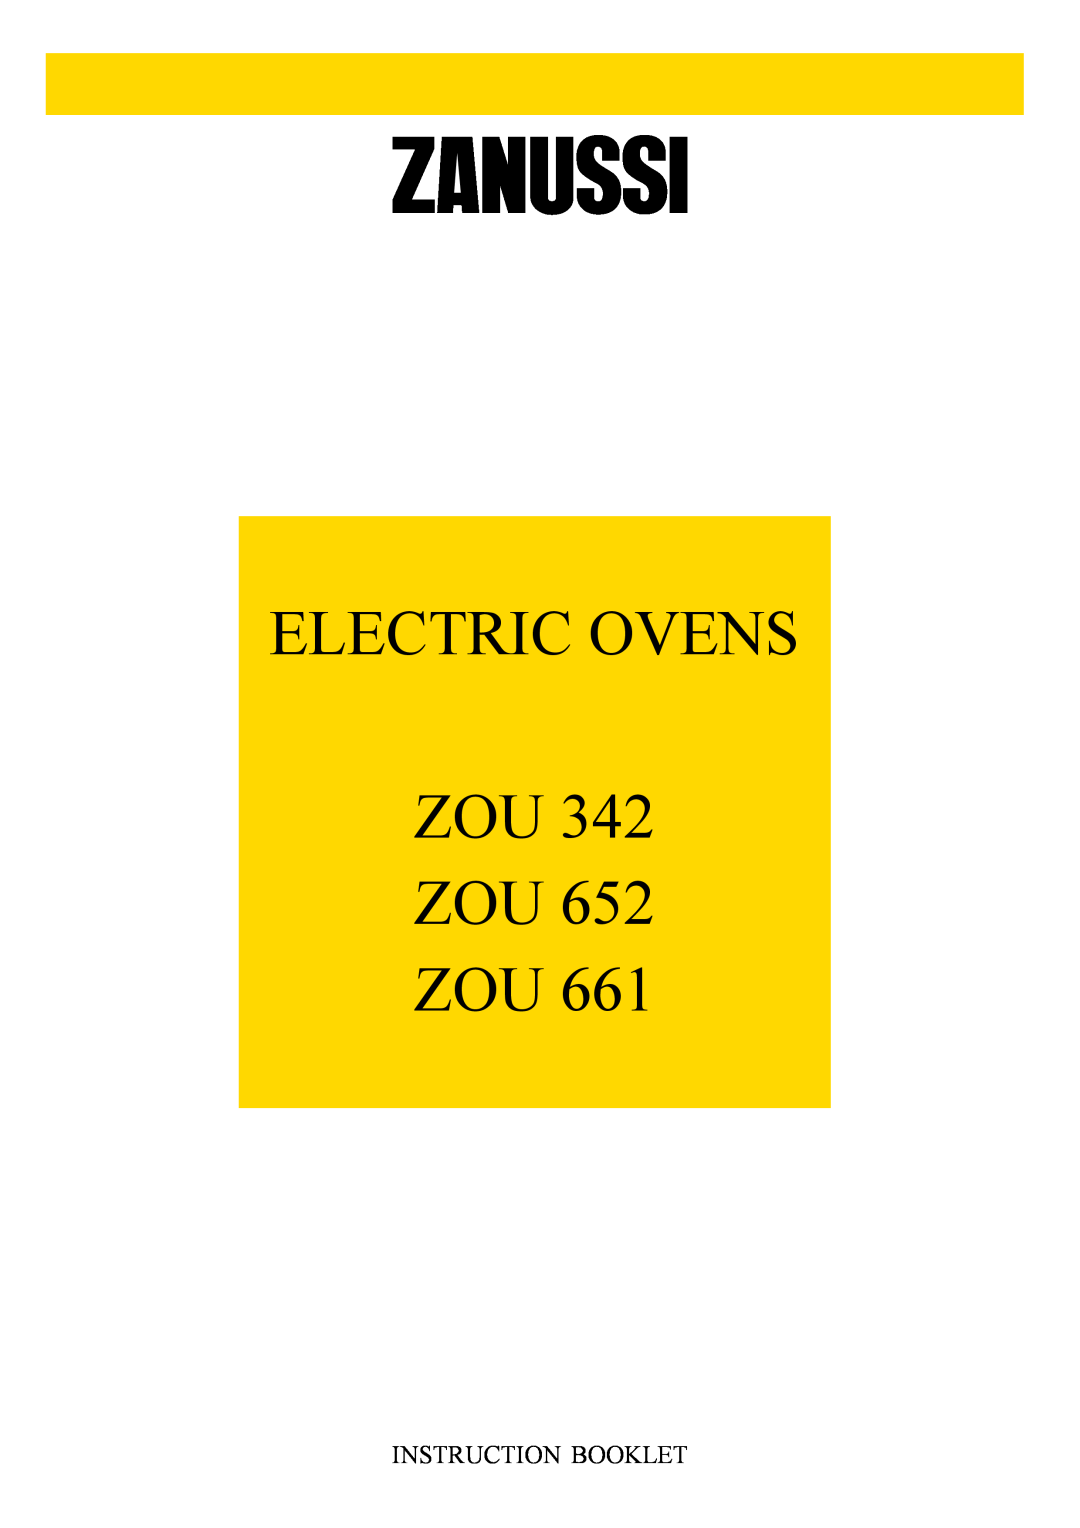 Zanussi ZOU 661 manual Instruction Booklet, Electric Ovens, ZOU 342 ZOU 652 ZOU 